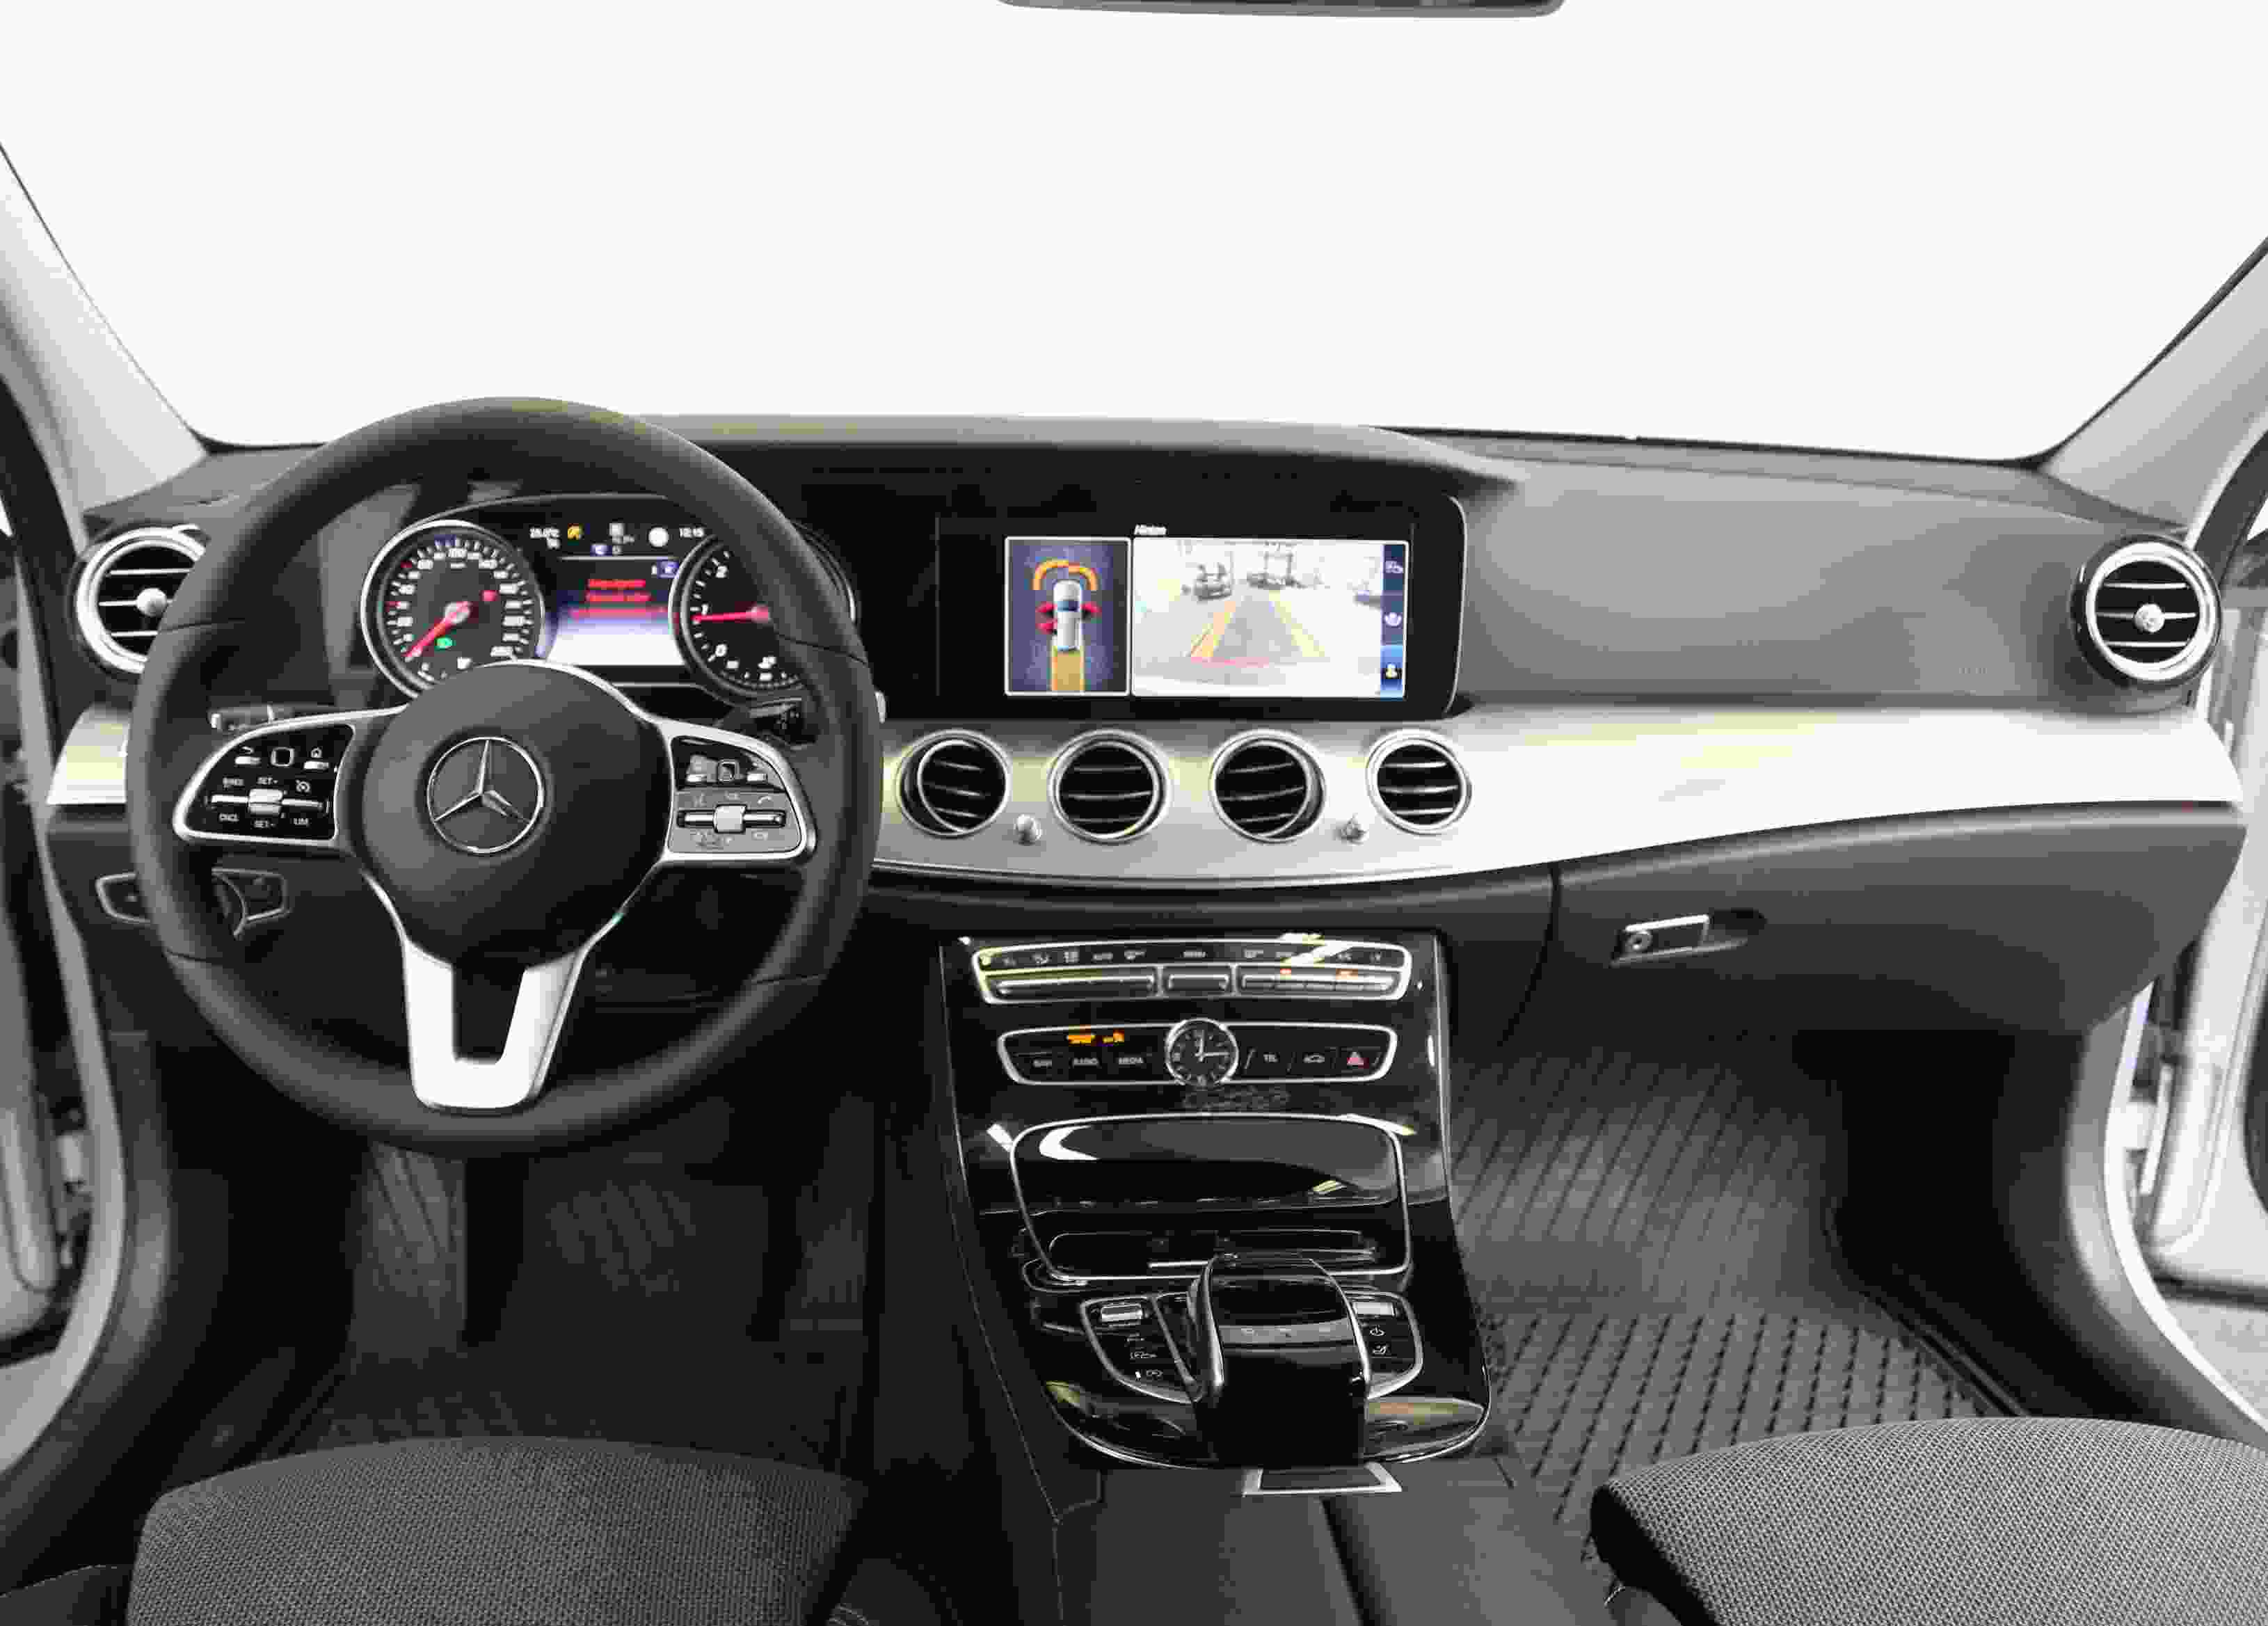 Mercedes-Benz E 220 T d Avantgarde* Comand* Kamera* Sidebags+++++ 